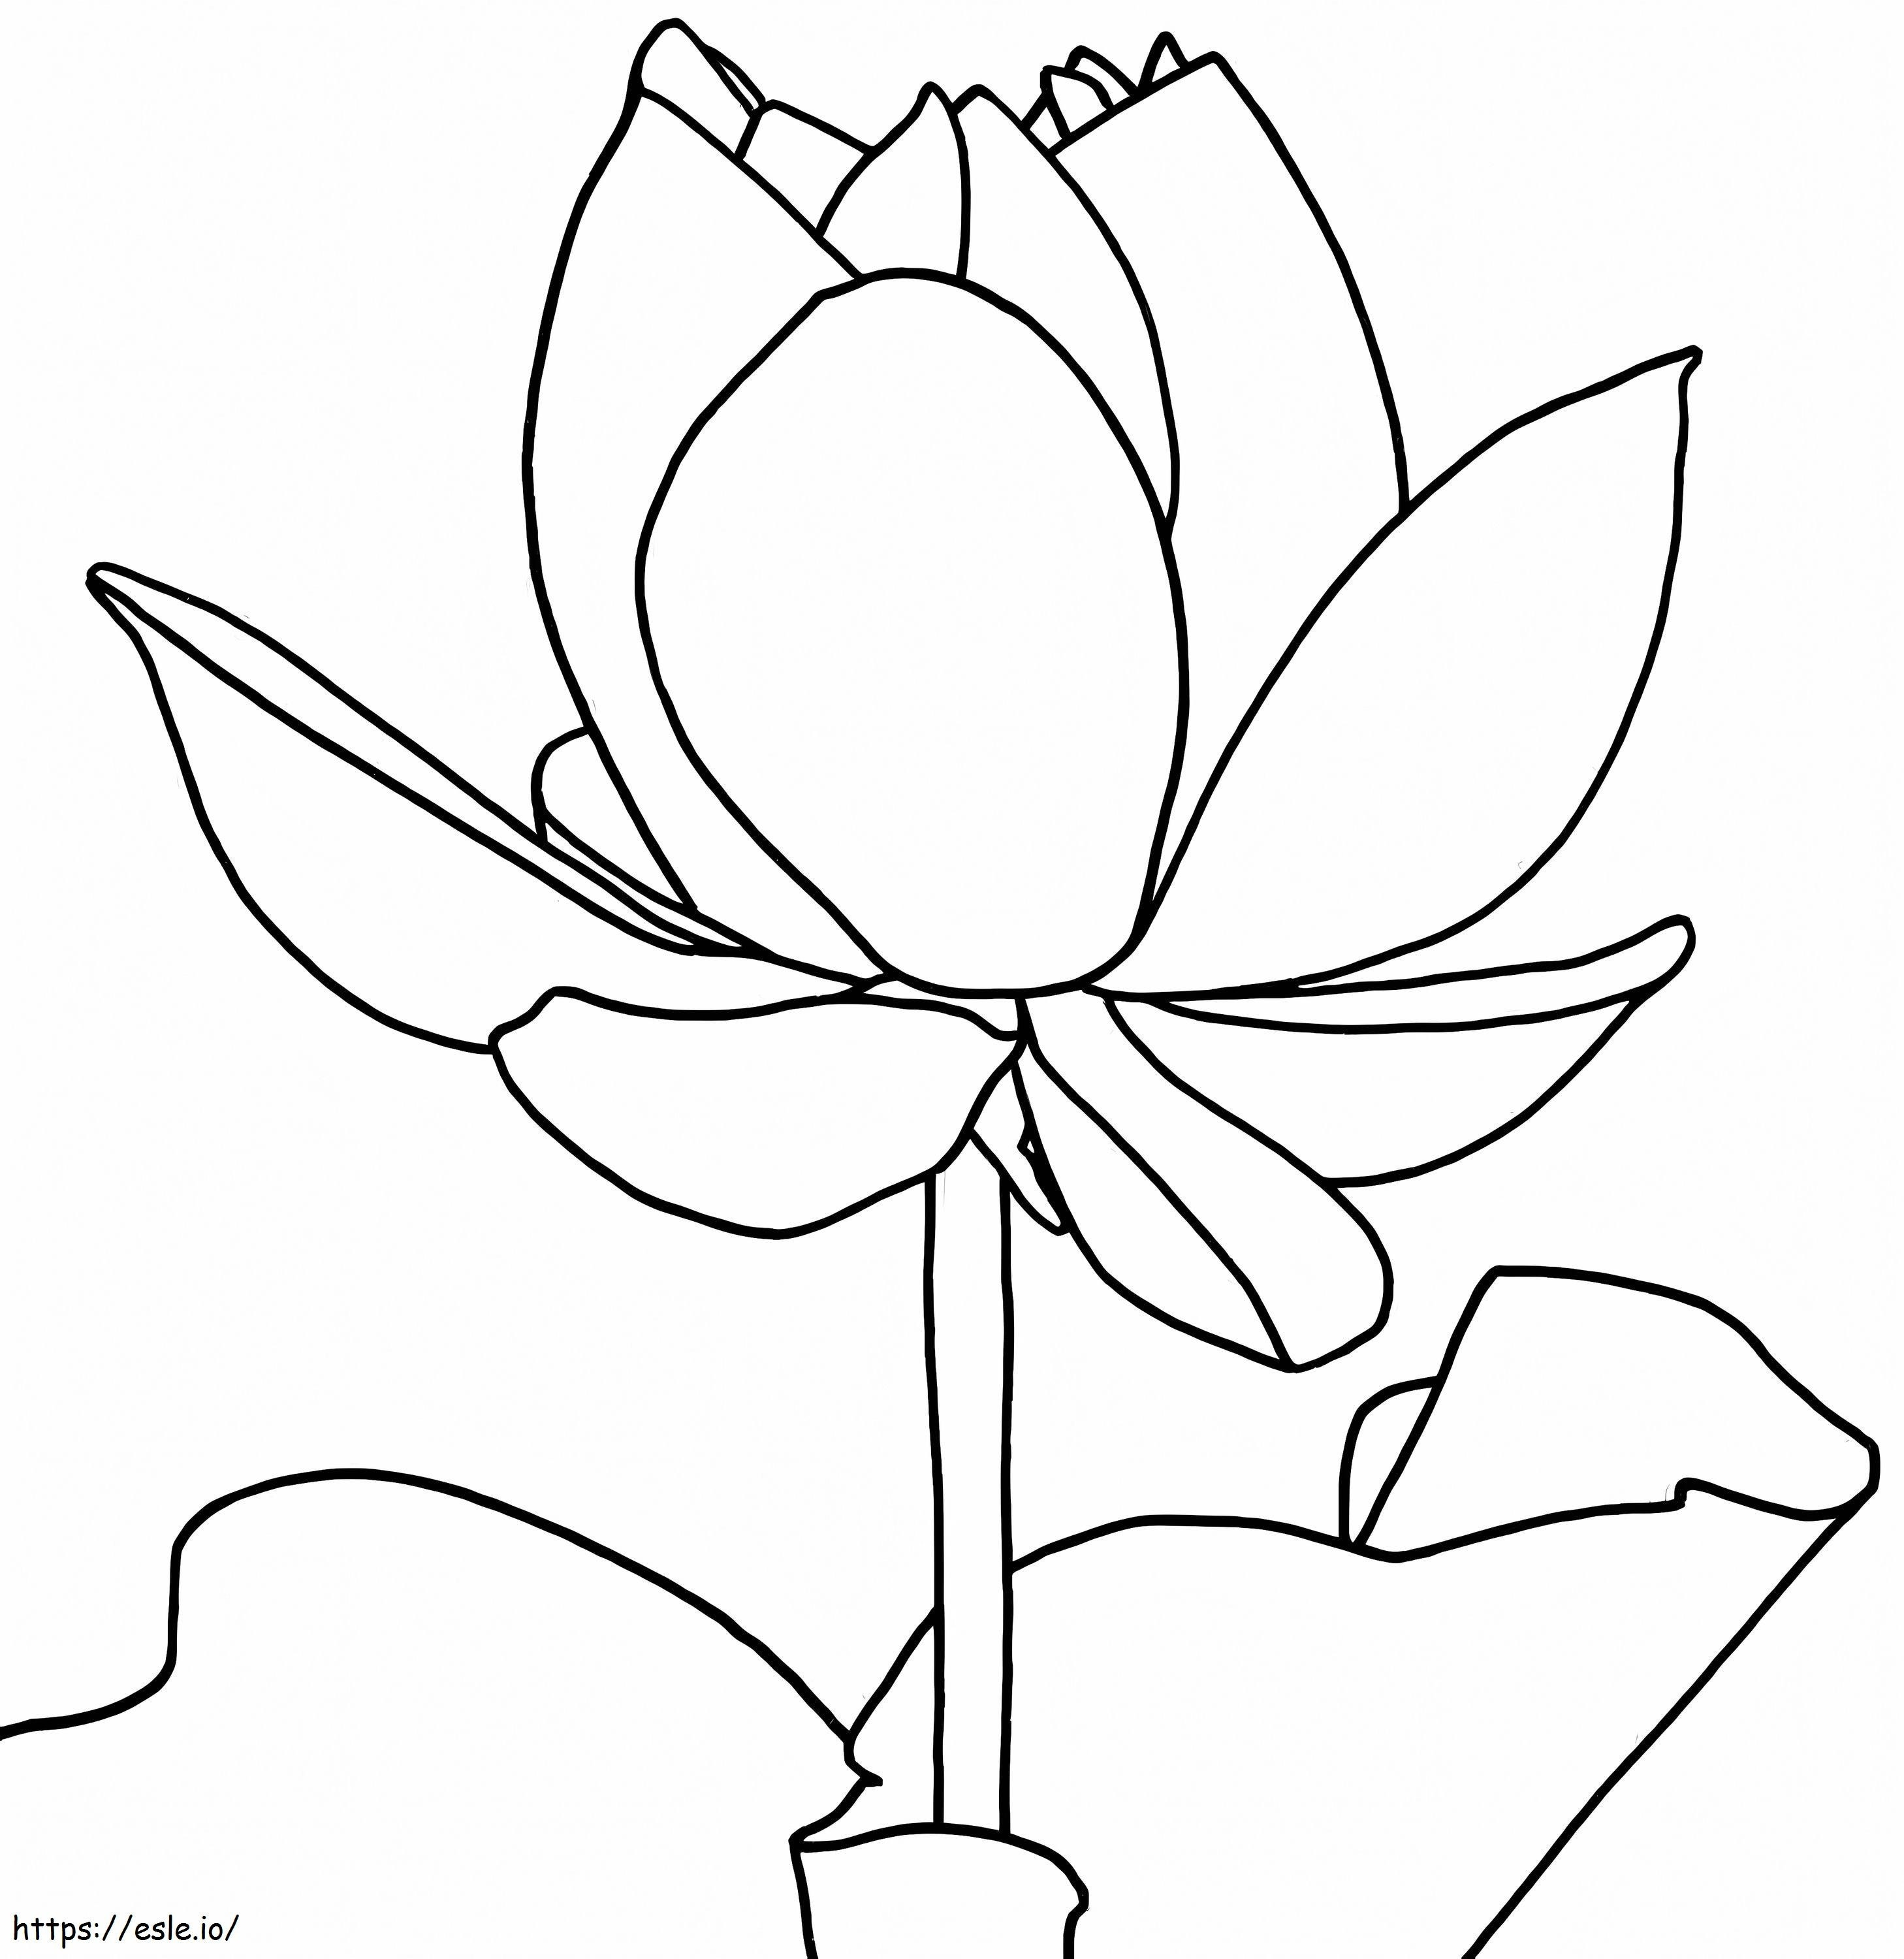 Coloriage Dessin De Lotus à imprimer dessin